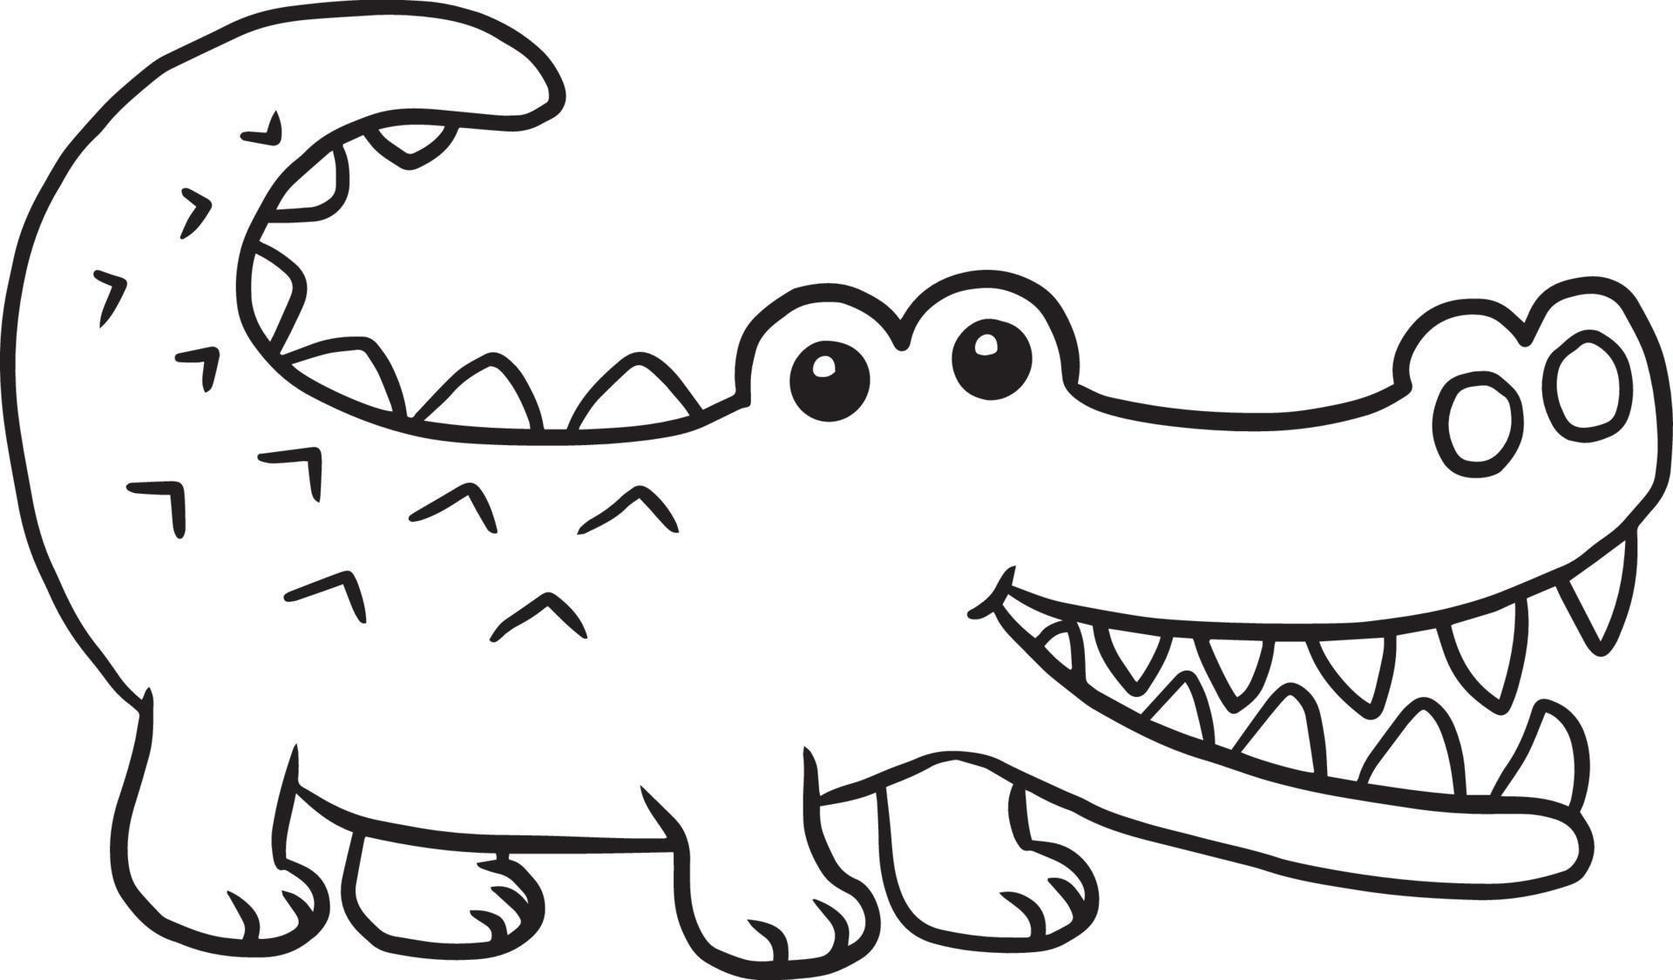 crocodile doodle dessin animé kawaii anime mignonne coloriage vecteur